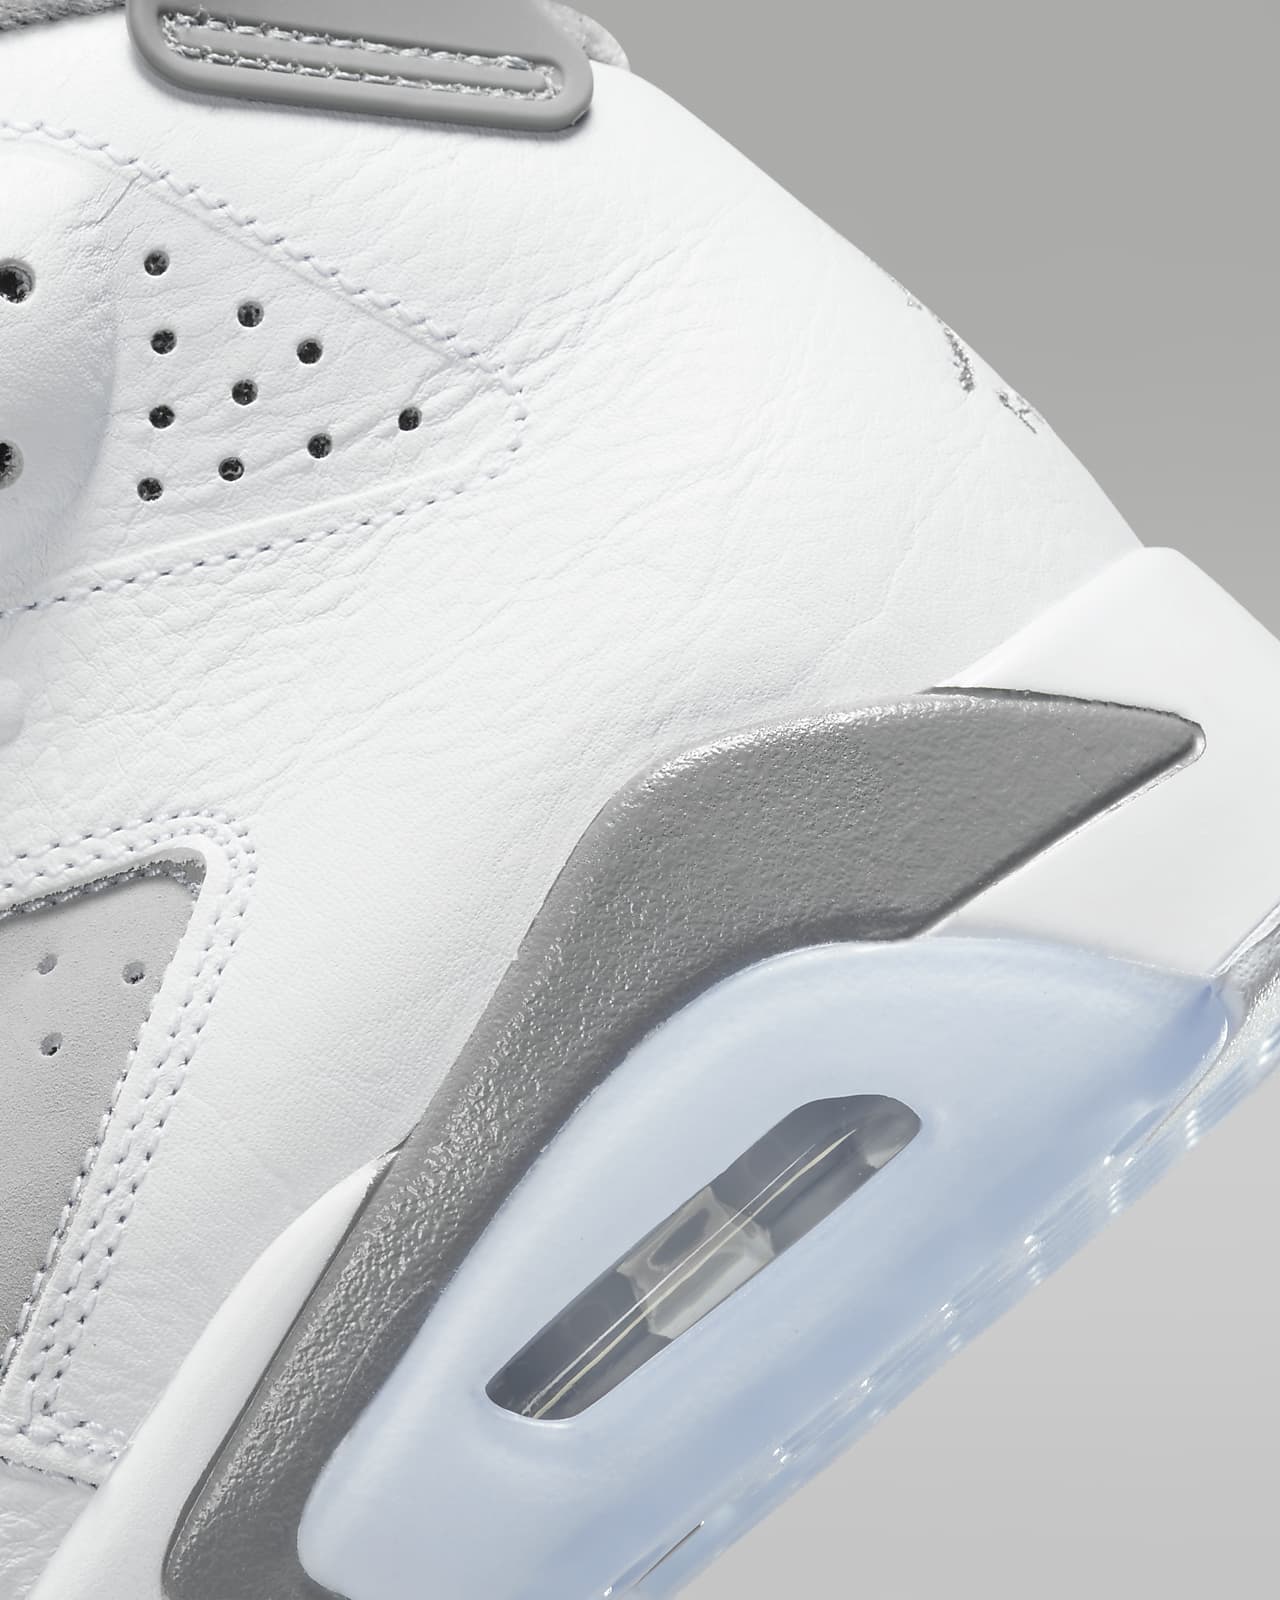 Air Jordan 6 Retro 复刻男子运动鞋